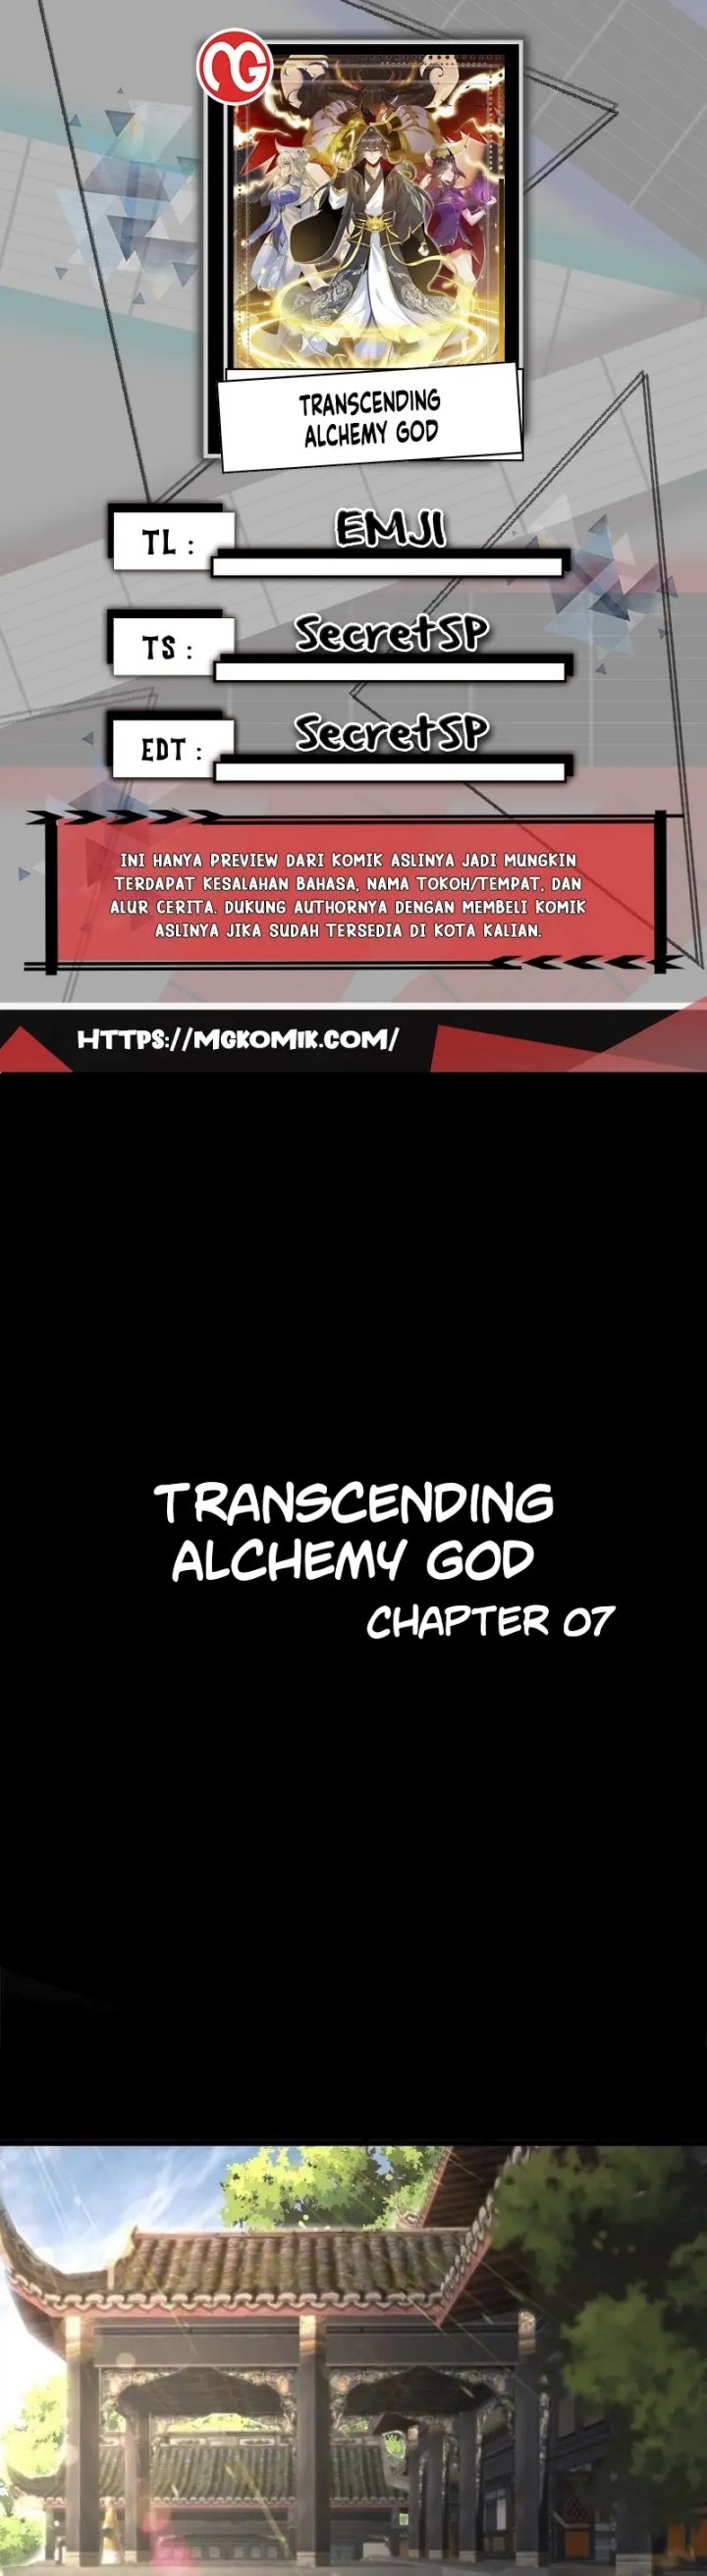 Transcending Alchemy God Chapter 07 1